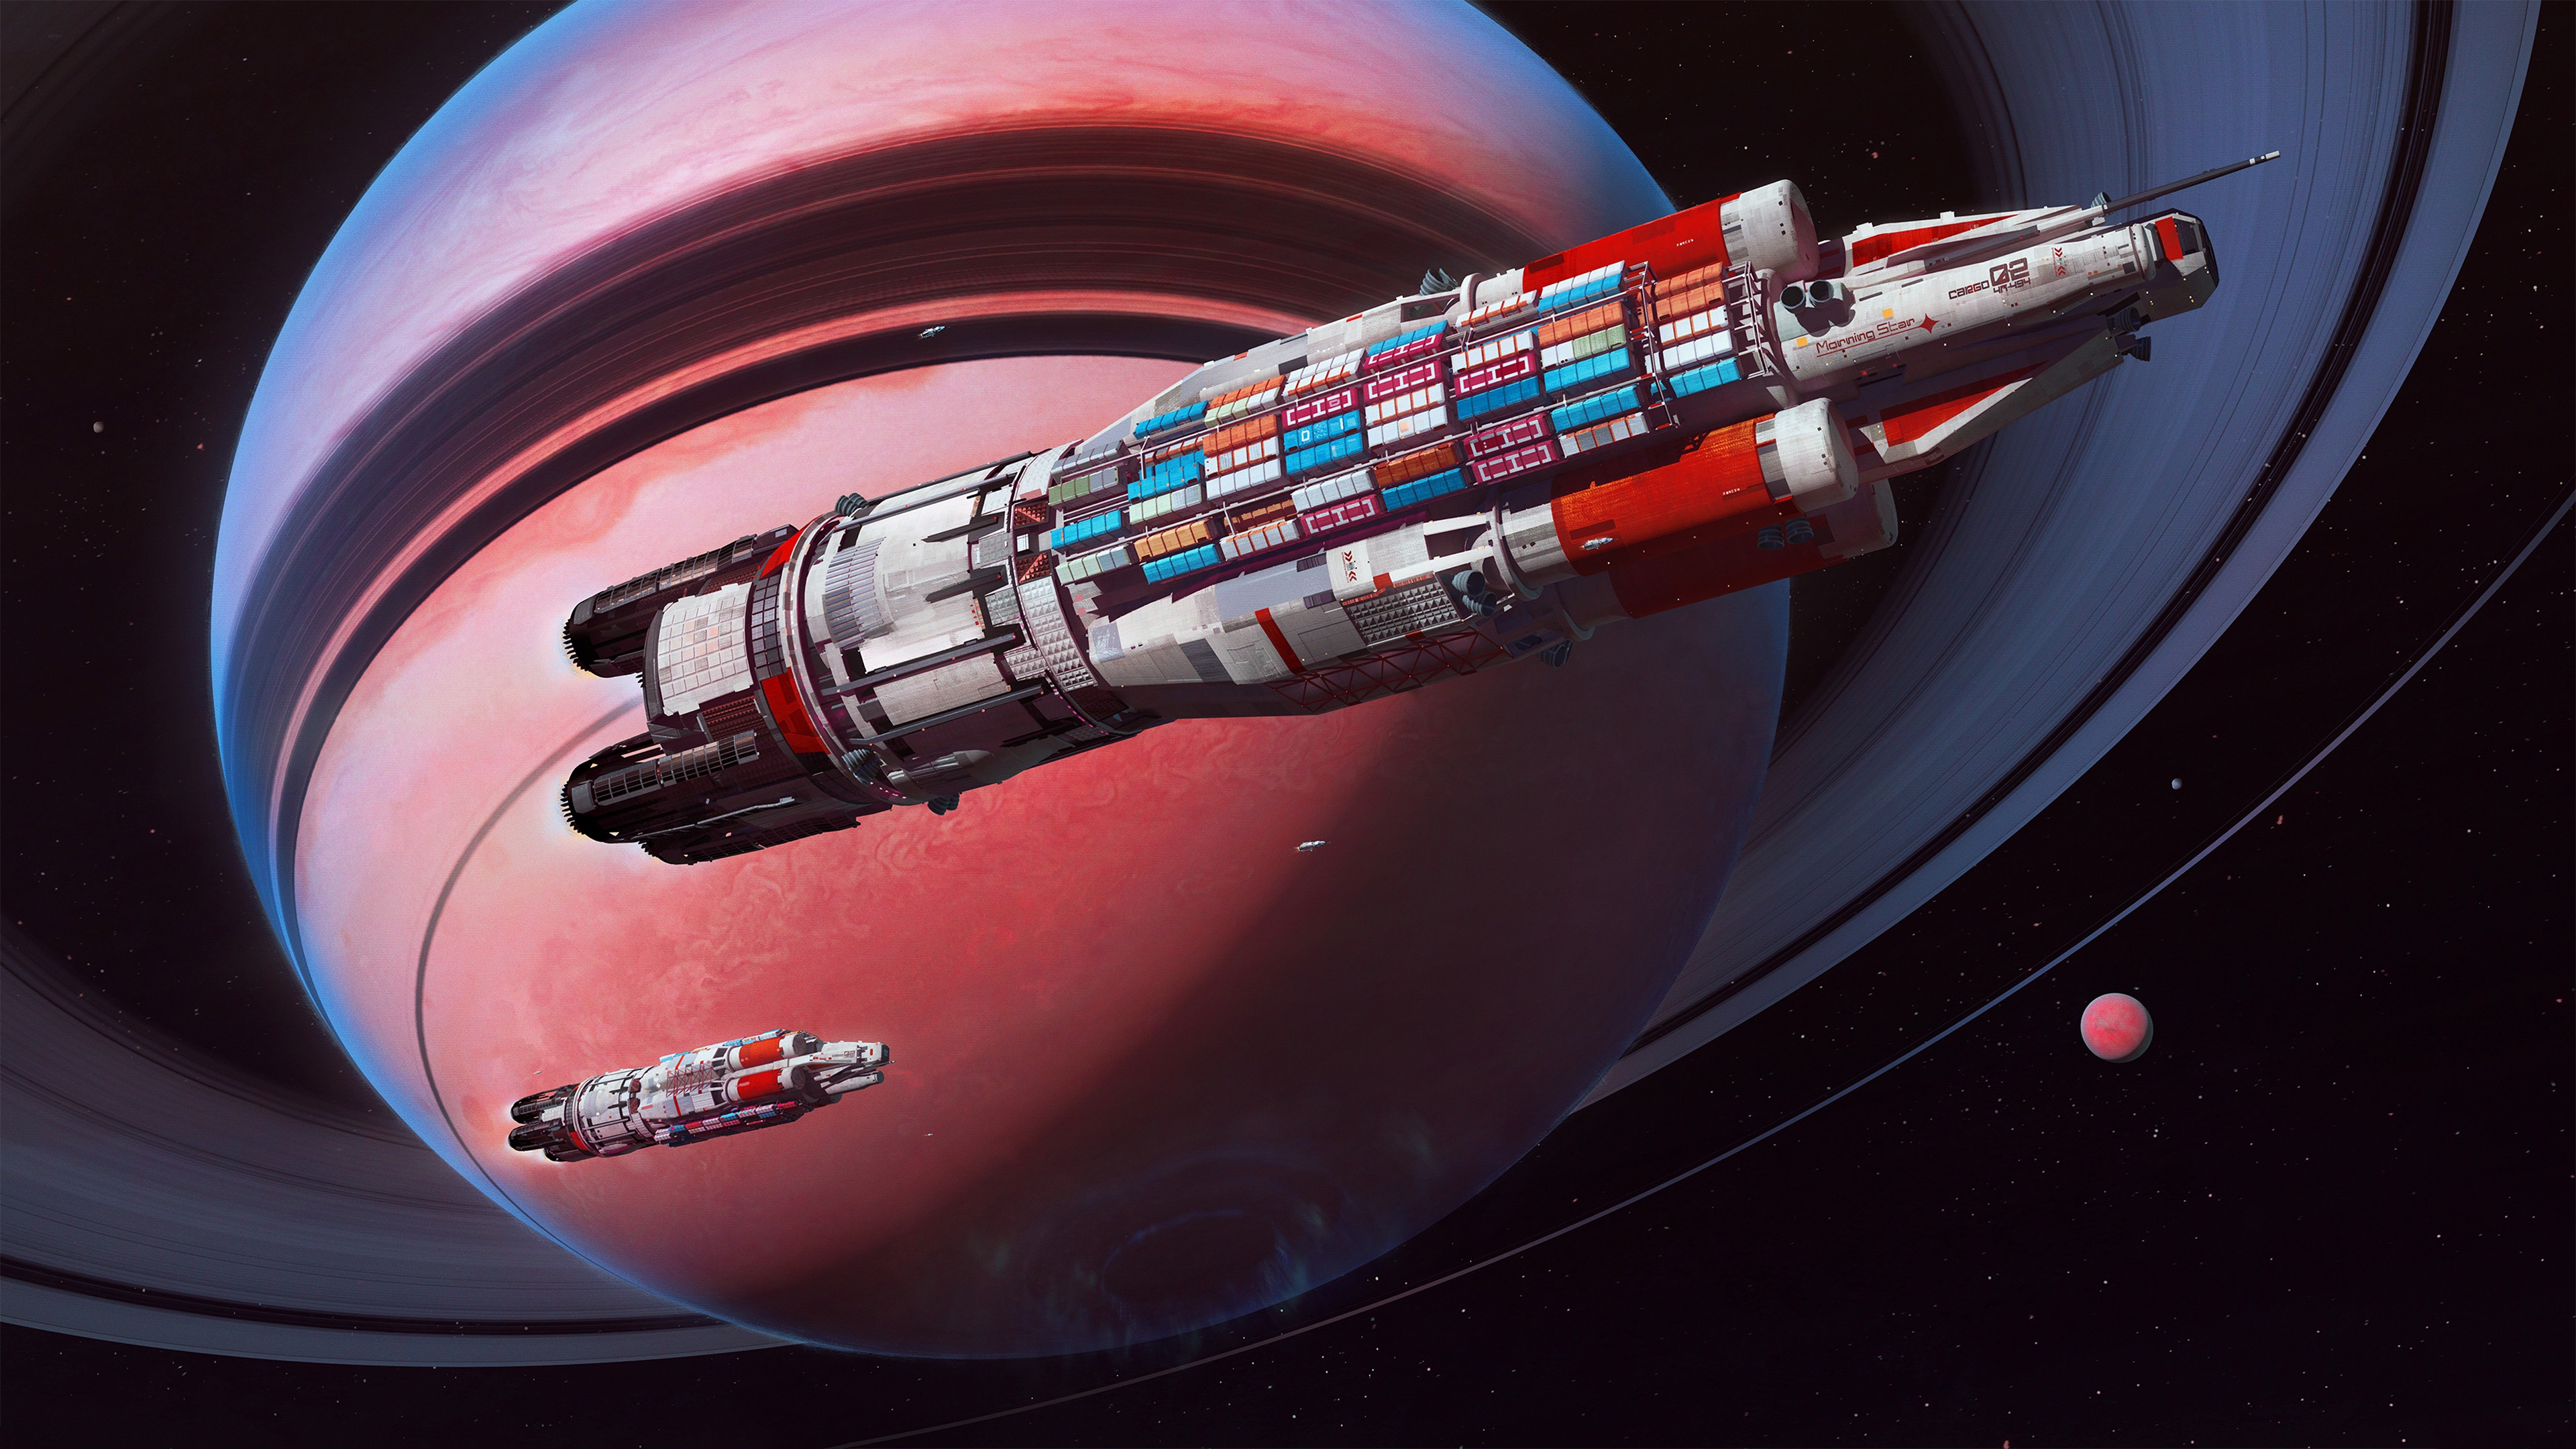 General 3840x2160 Maciej Rebisz space art spaceship planet express Futurism futuristic cargo